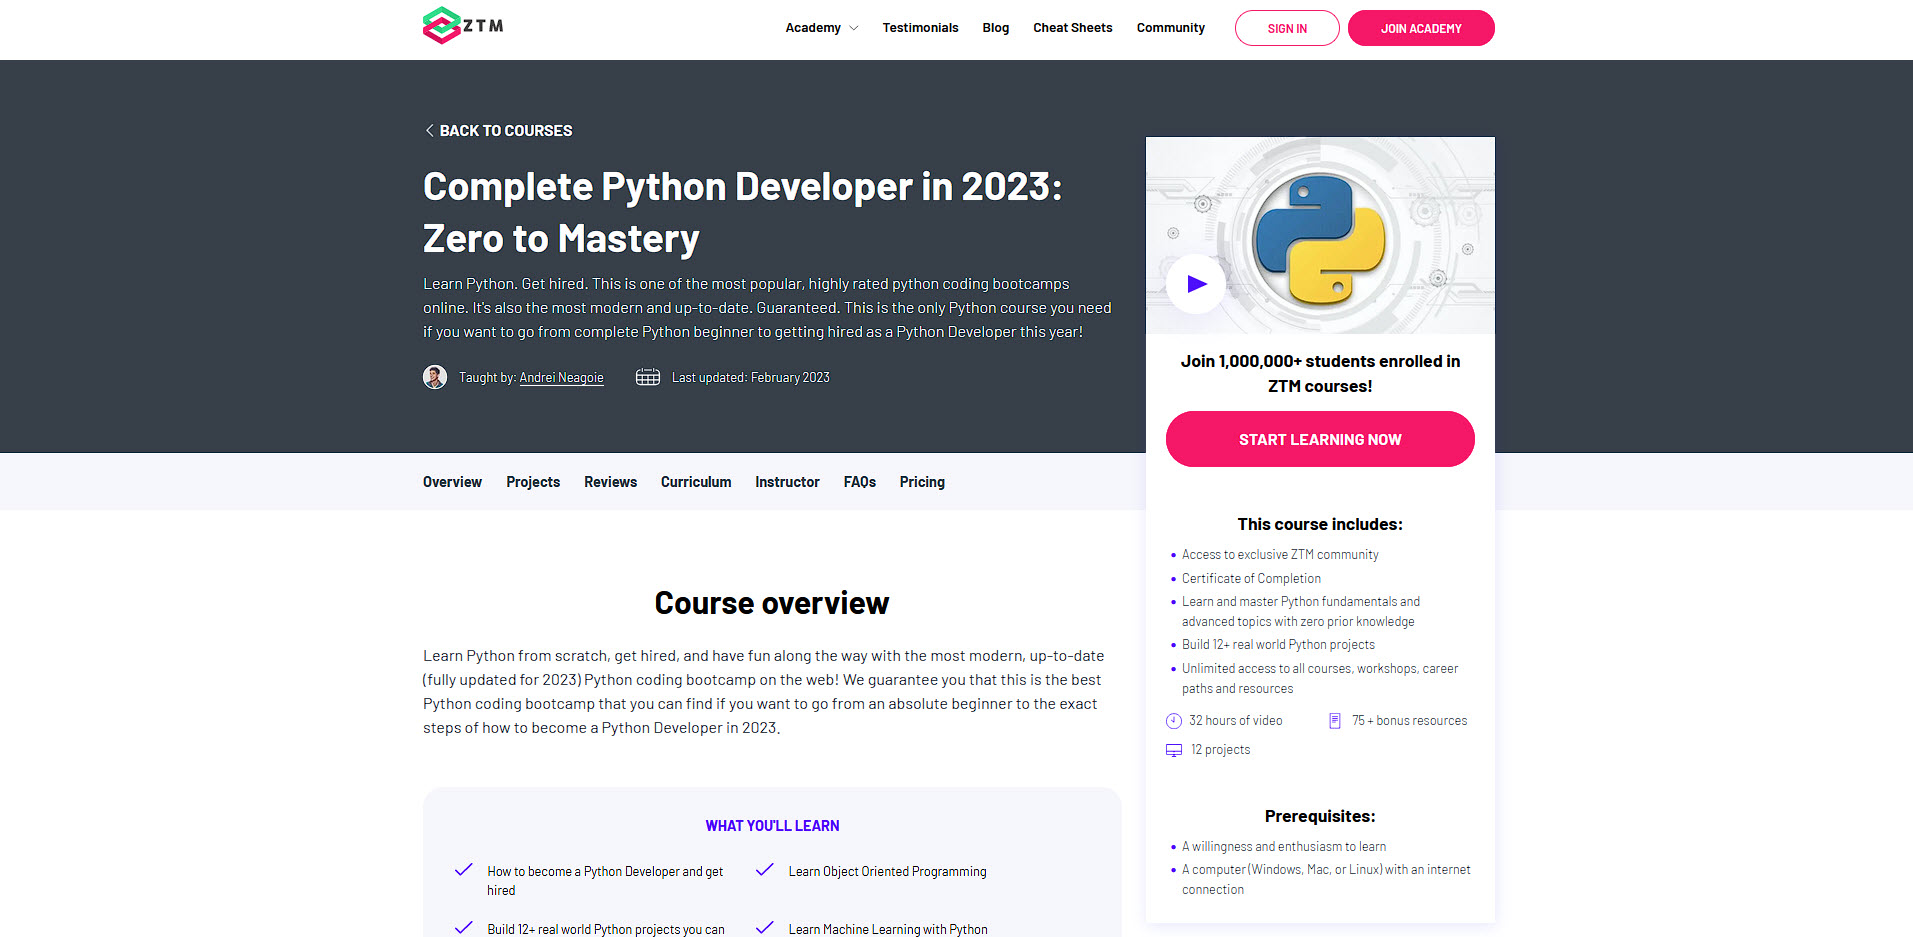 ztm complete python developer course 2022